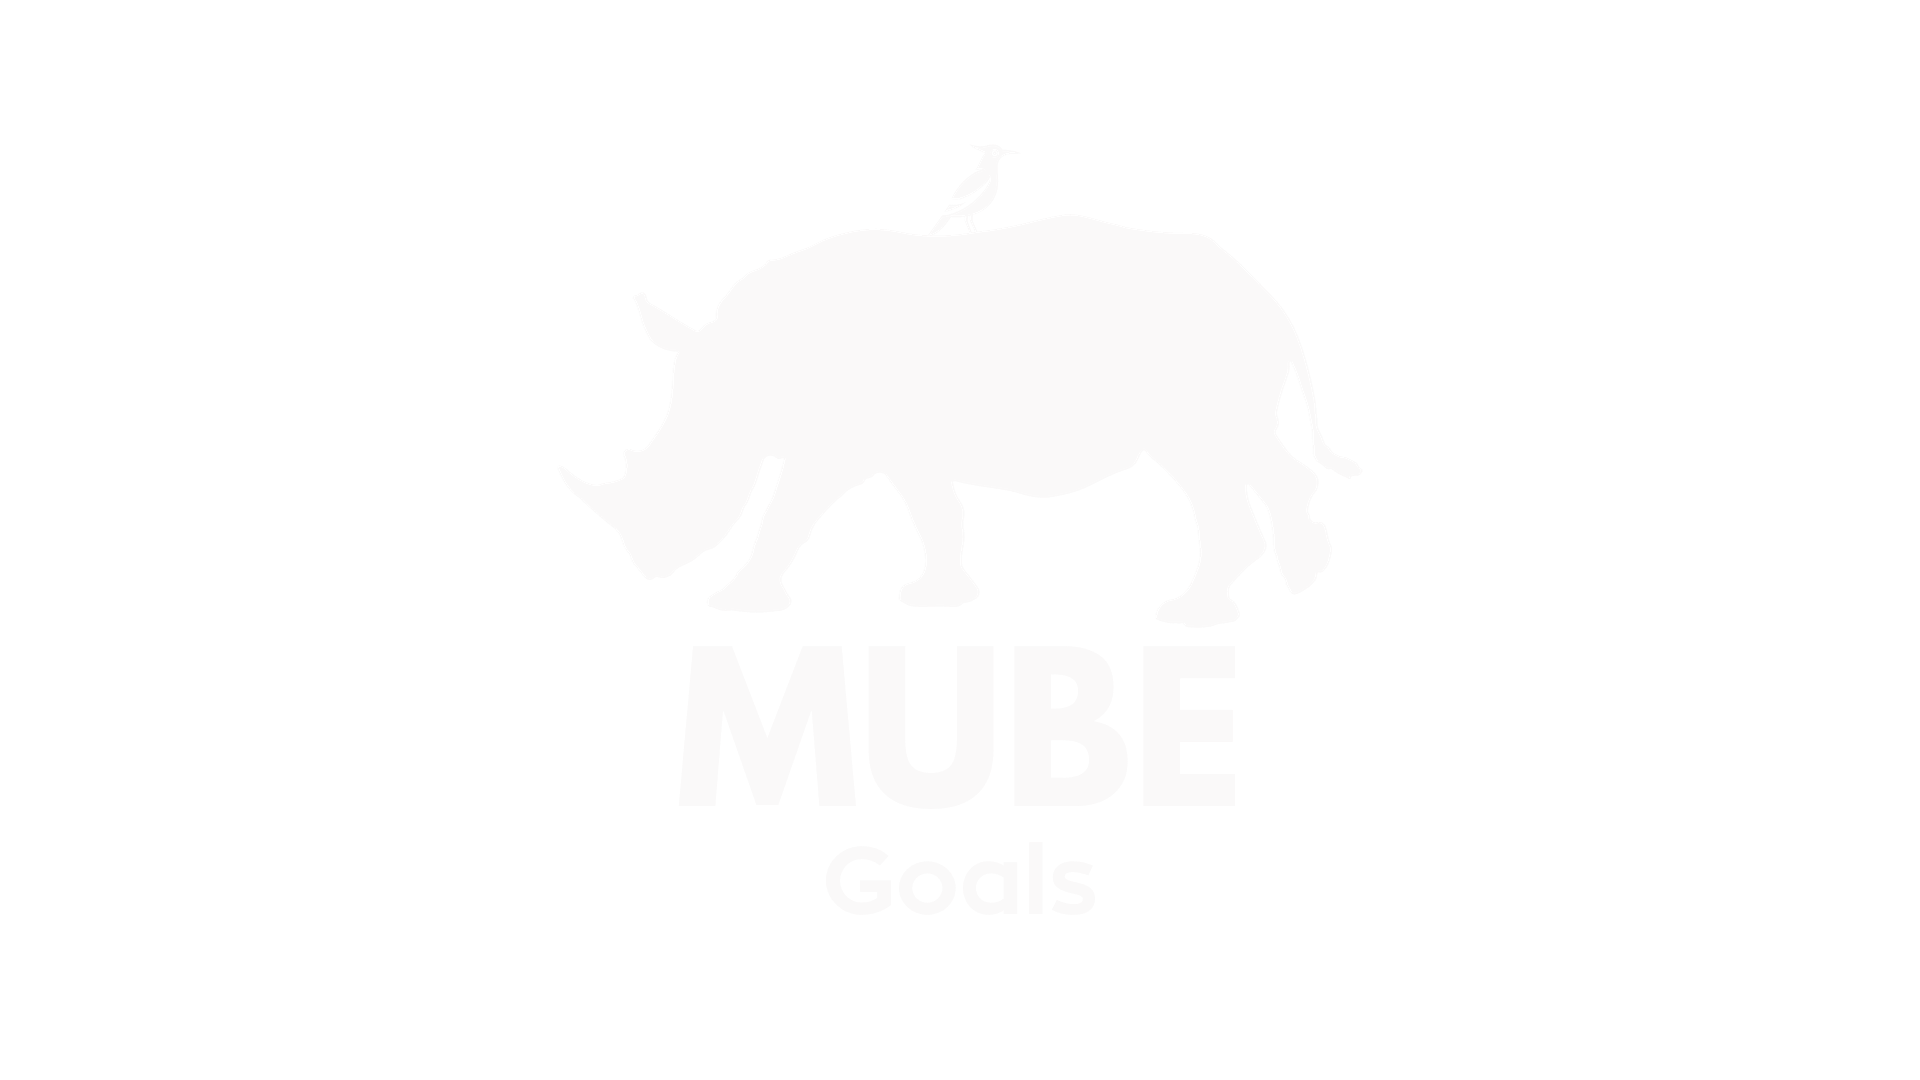 Mube Goals